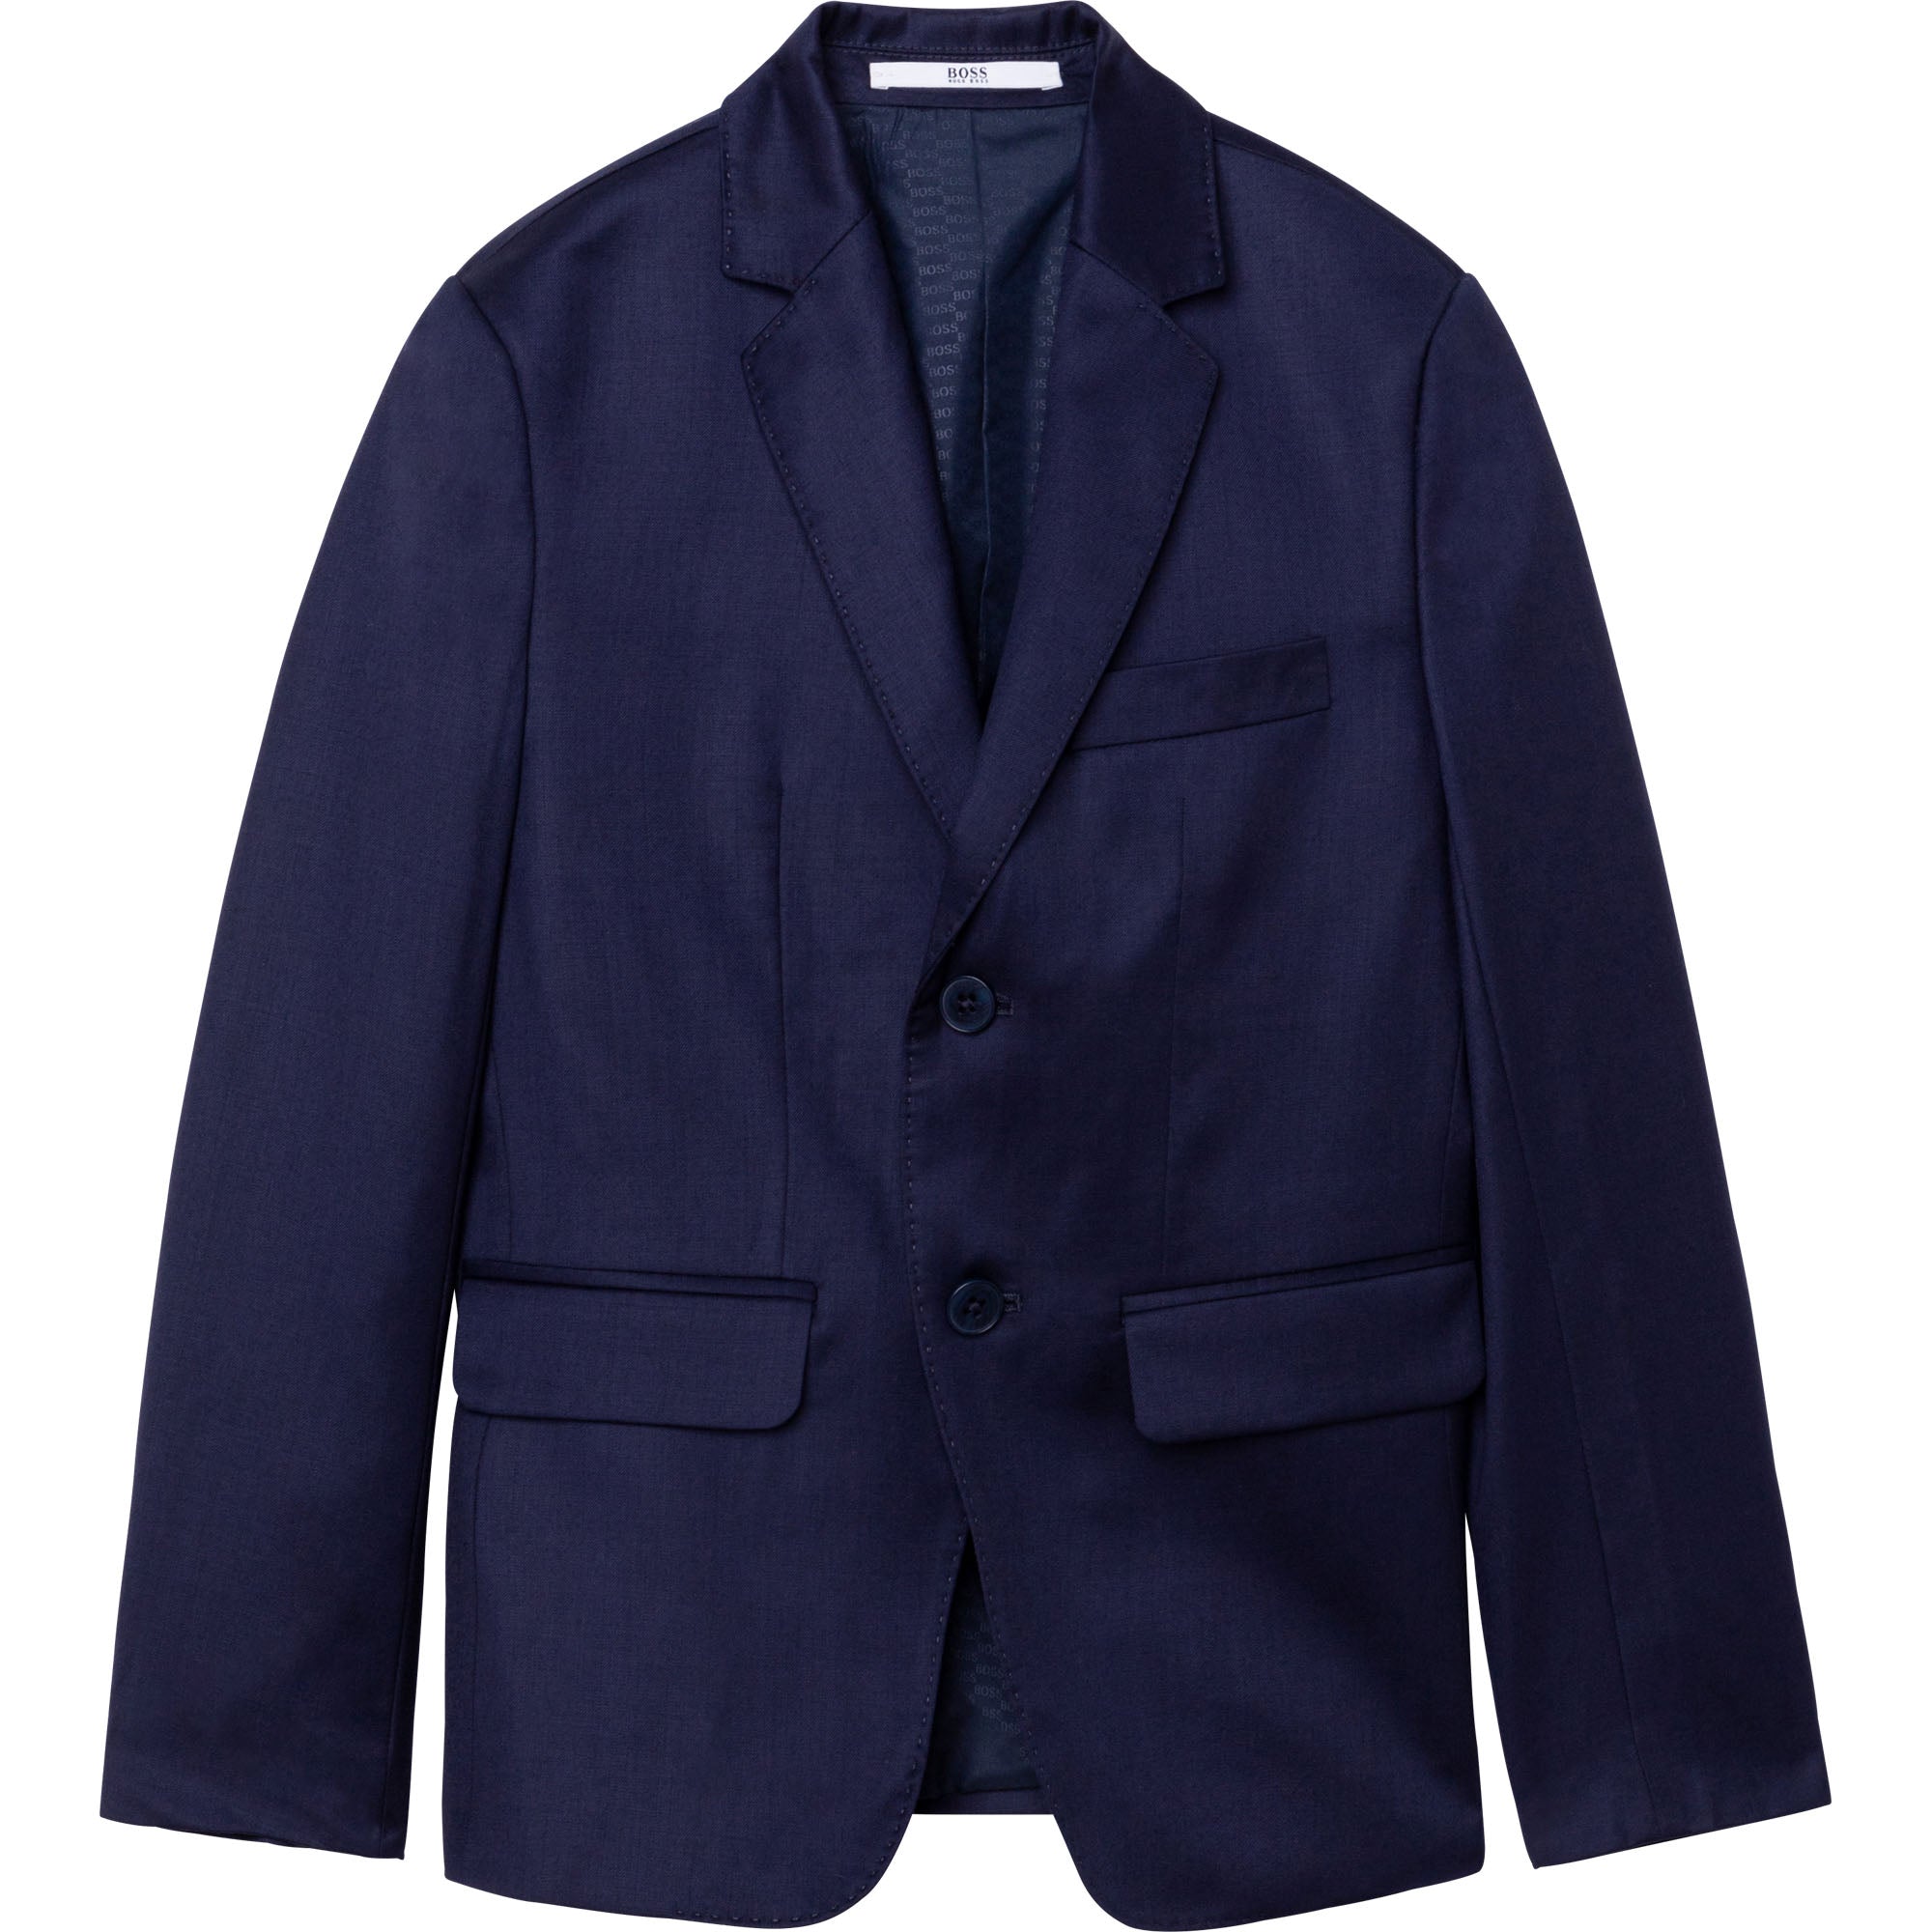 Boys Dark Blue Wool Suit Coat